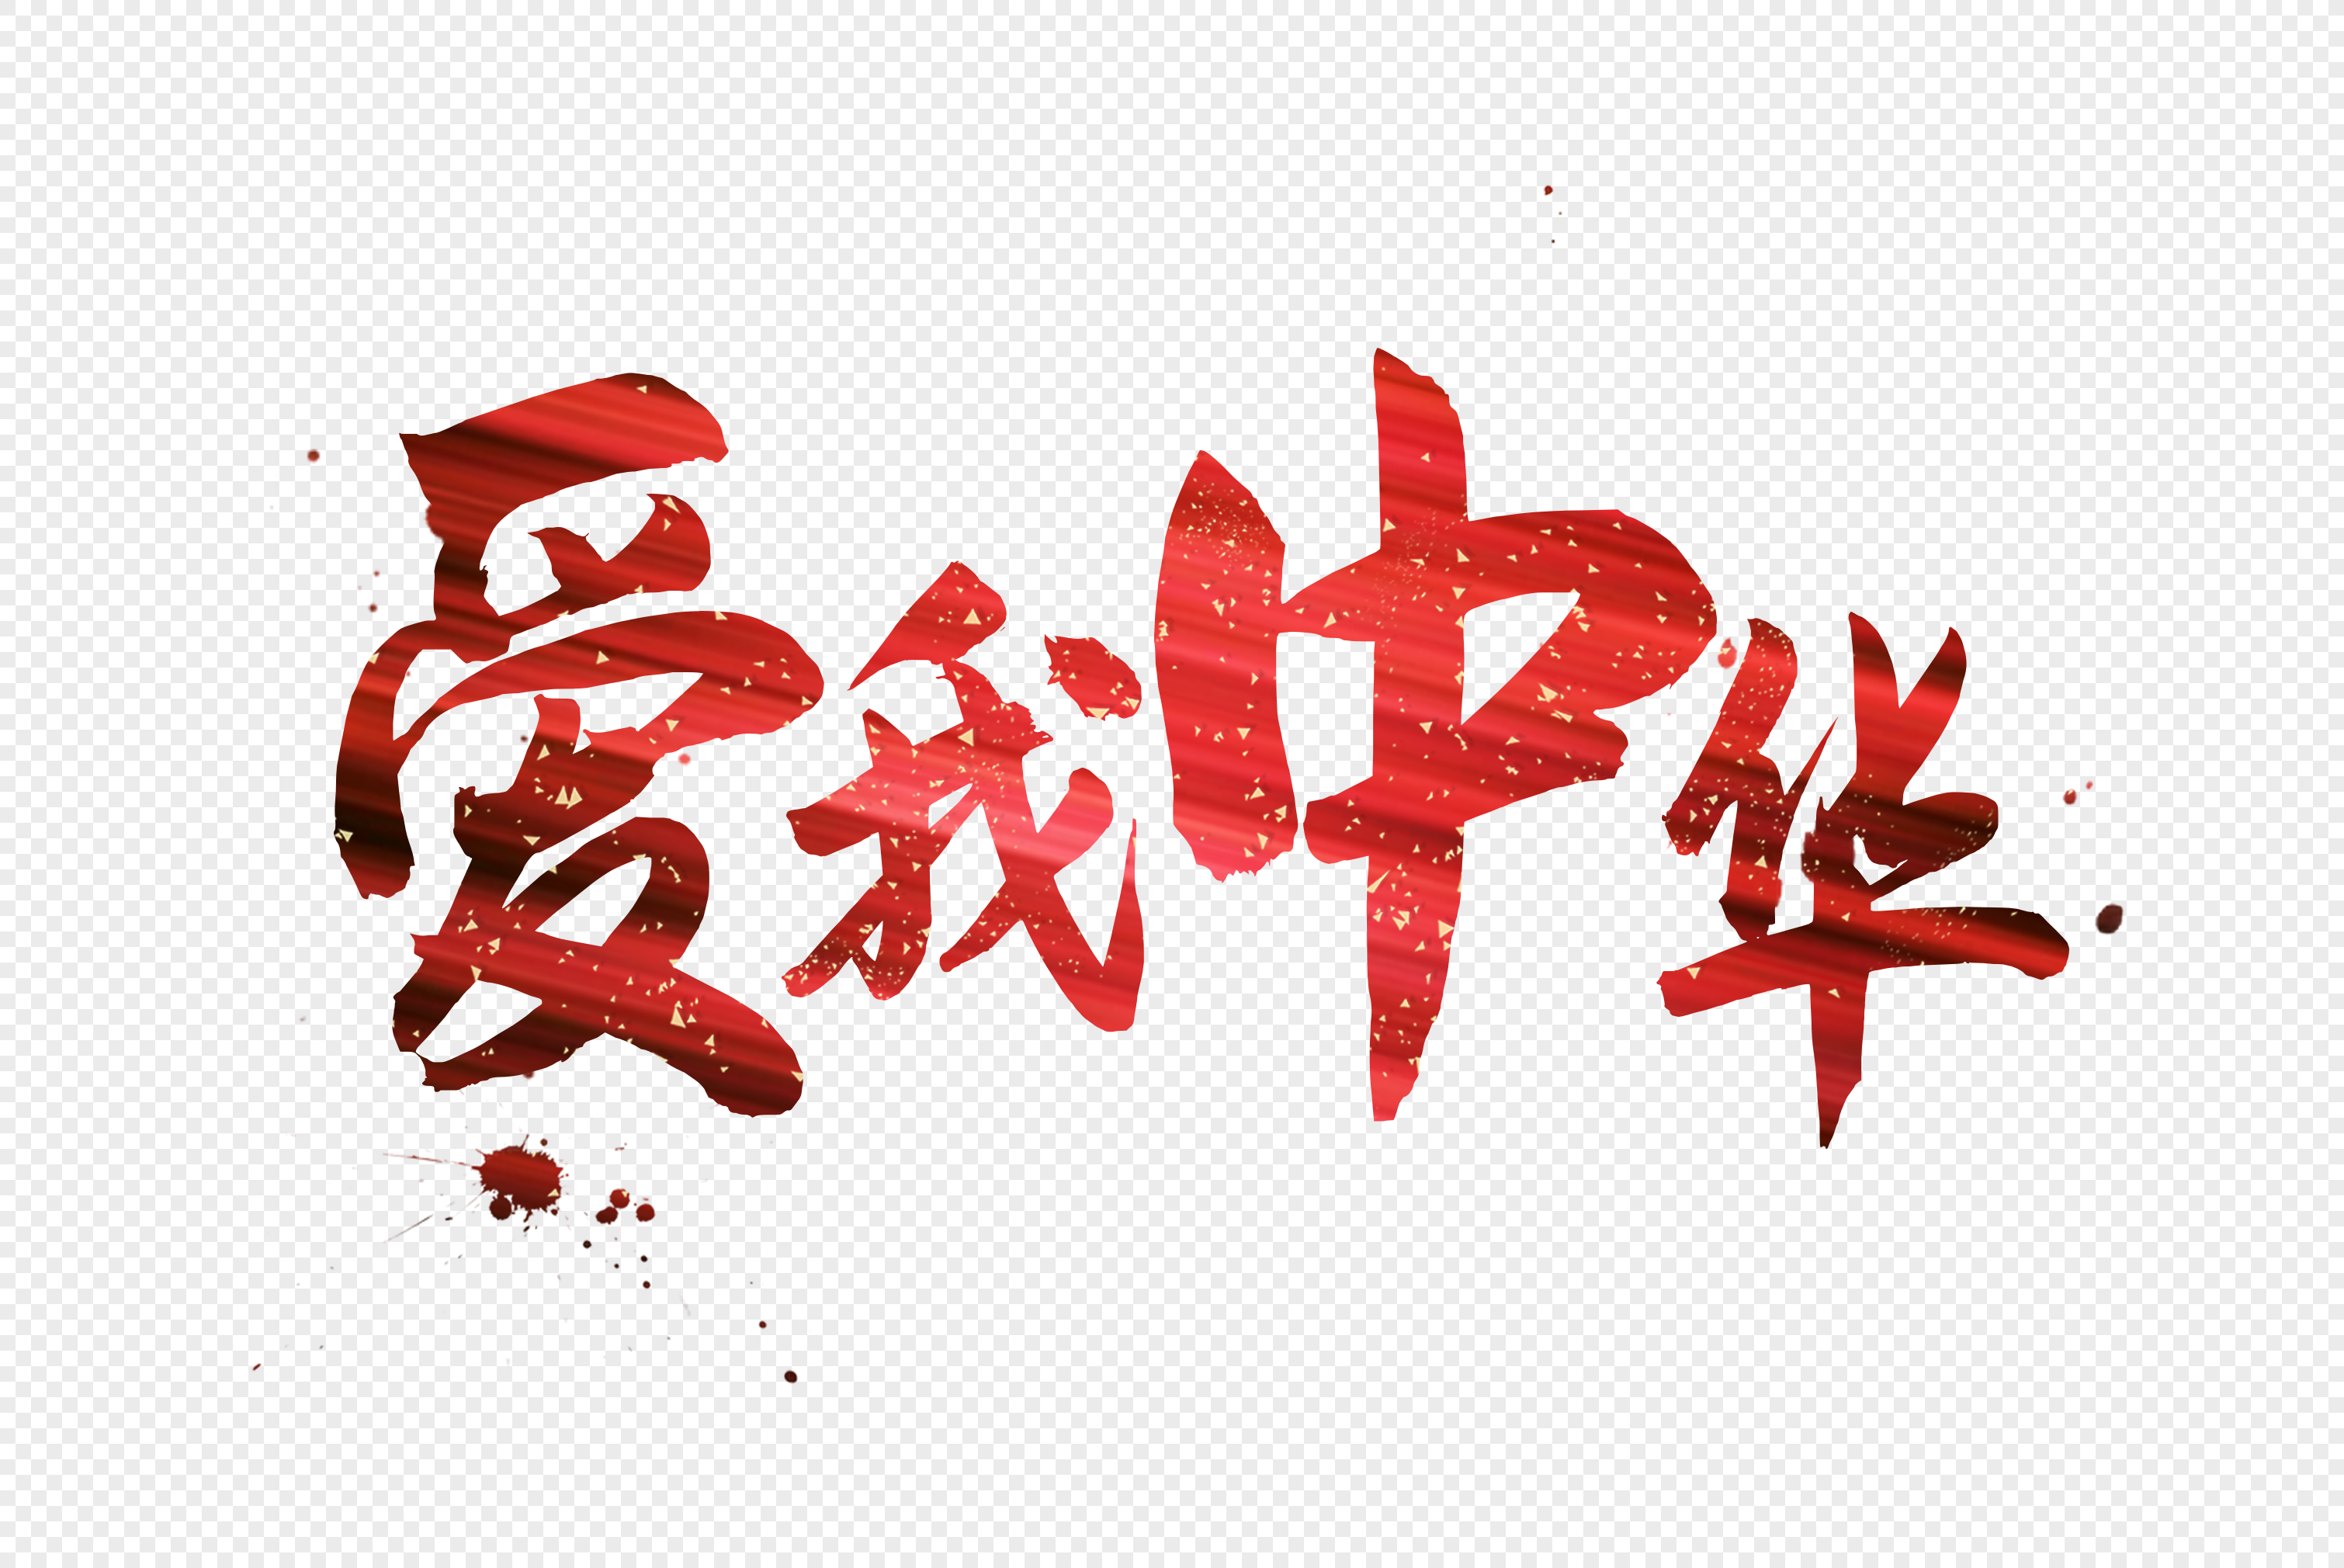 Những hình ảnh chữ Trung Quốc đang ngày càng được sử dụng nhiều trong truyền thông và thiết kế đồ họa. Tại đây, bạn sẽ tìm thấy nhiều mẫu hình ảnh chữ Trung Quốc PNG đẹp và chất lượng cao. Hãy truy cập ngay để tìm kiếm những hình ảnh chữ Trung Quốc phù hợp với nhu cầu của bạn.